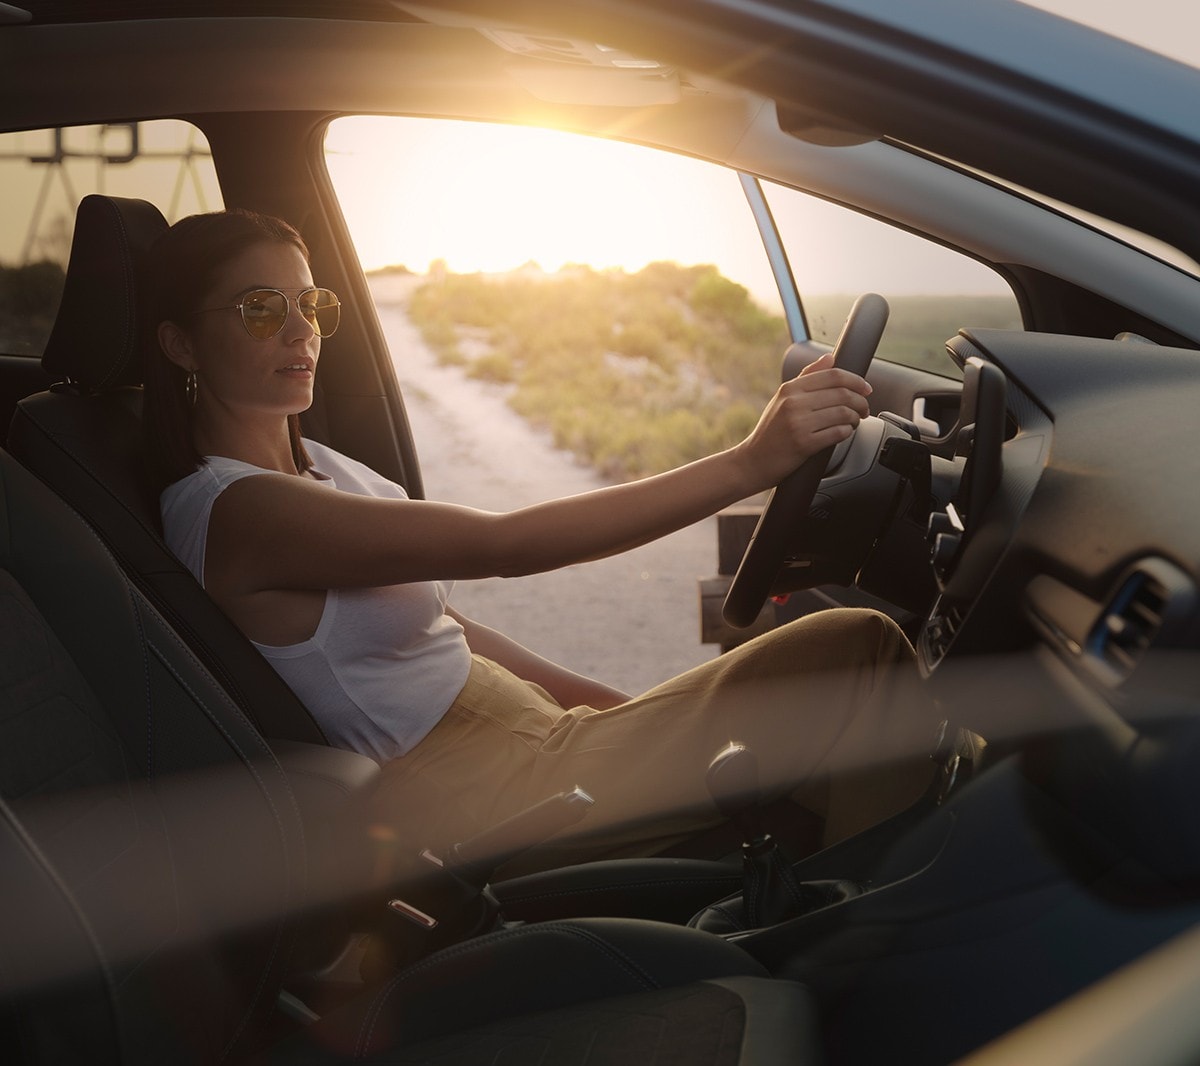 Ford Fiesta Innenraumansicht. Eine Frau sitz bei geöffneter Fahrertür auf dem Fahrersitz. Im Hintergrund ein Sonnenuntergang.